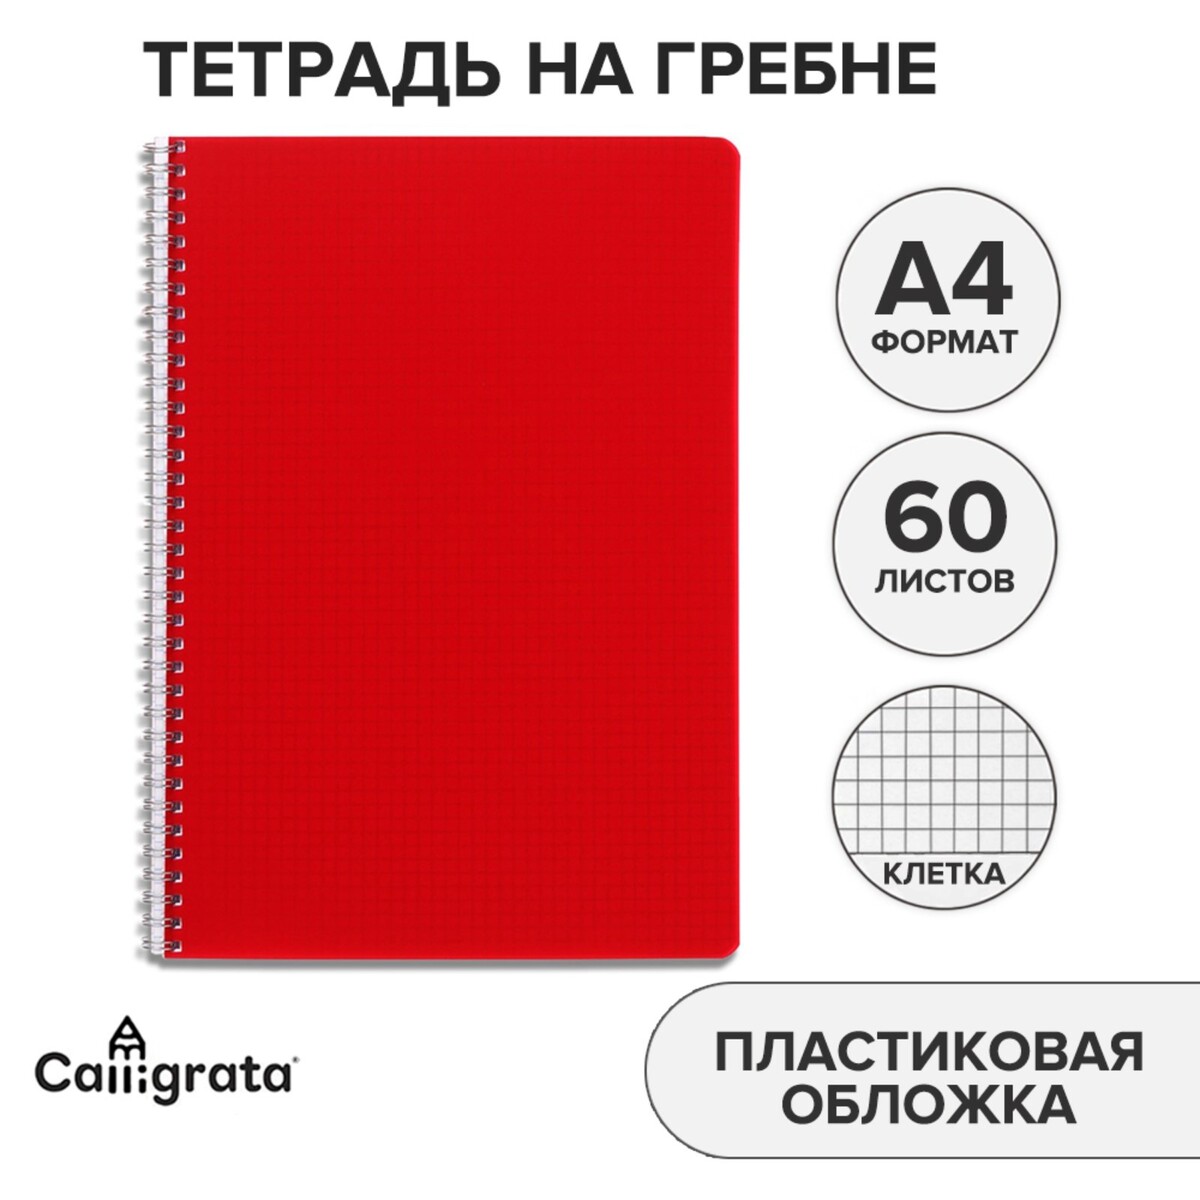 Тетрадь на гребне a4 60 листов в клетку calligrata красная, пластиковая обложка, блок офсет